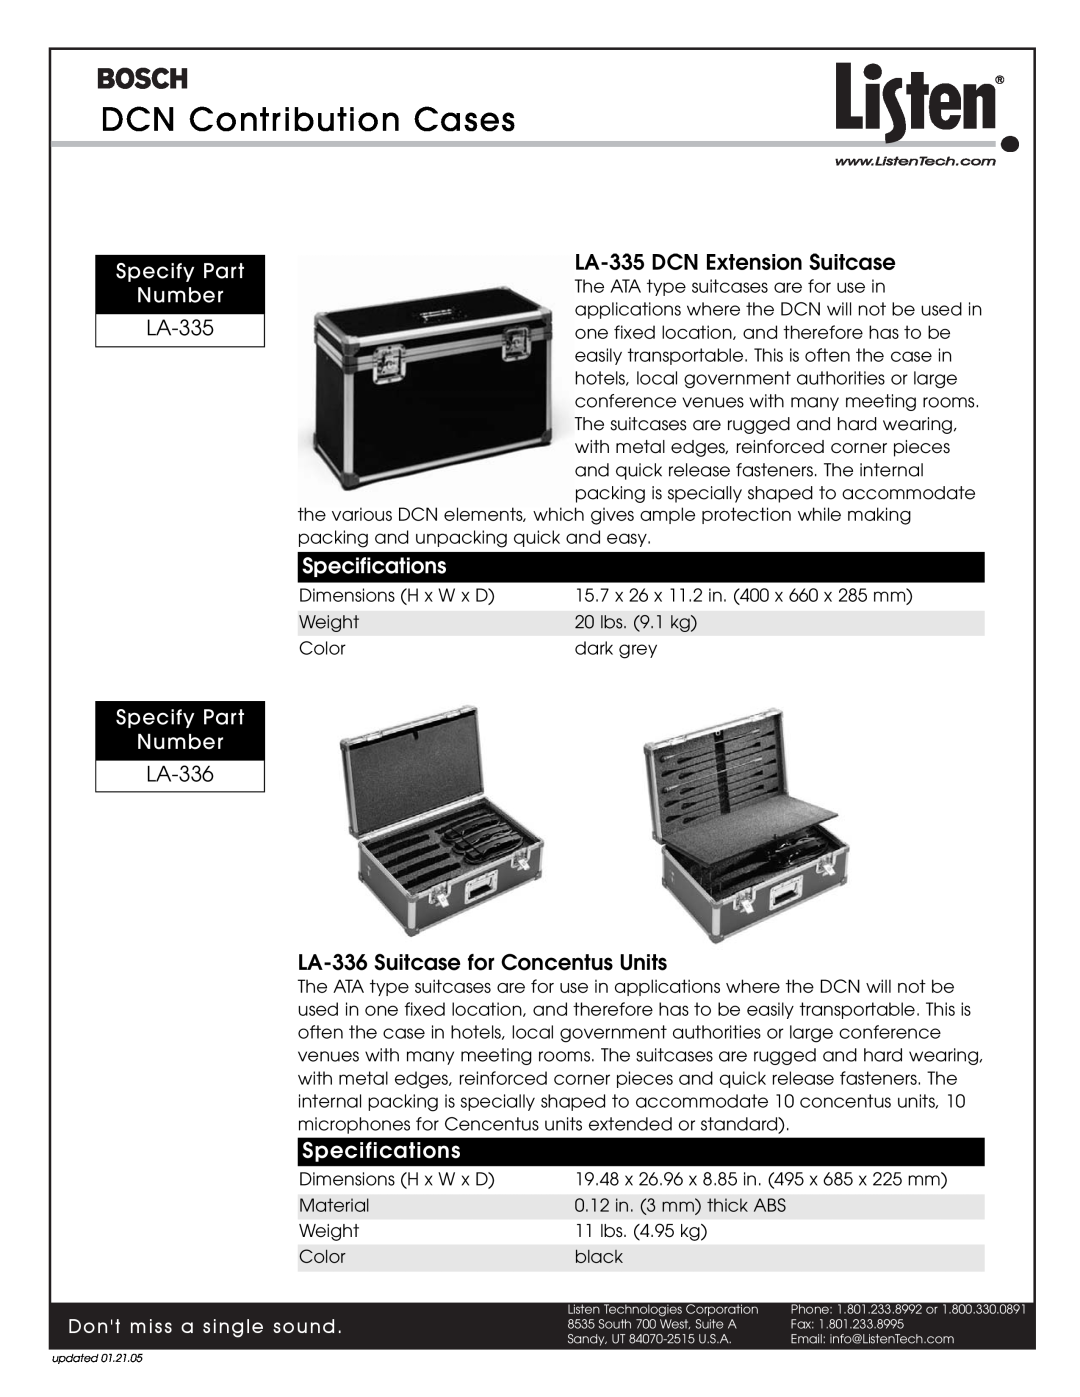 Listen Technologies DCN Contribution Cases, LA-335 DCN Extension Suitcase, LA-336 LA-336 Suitcase for Concentus Units 